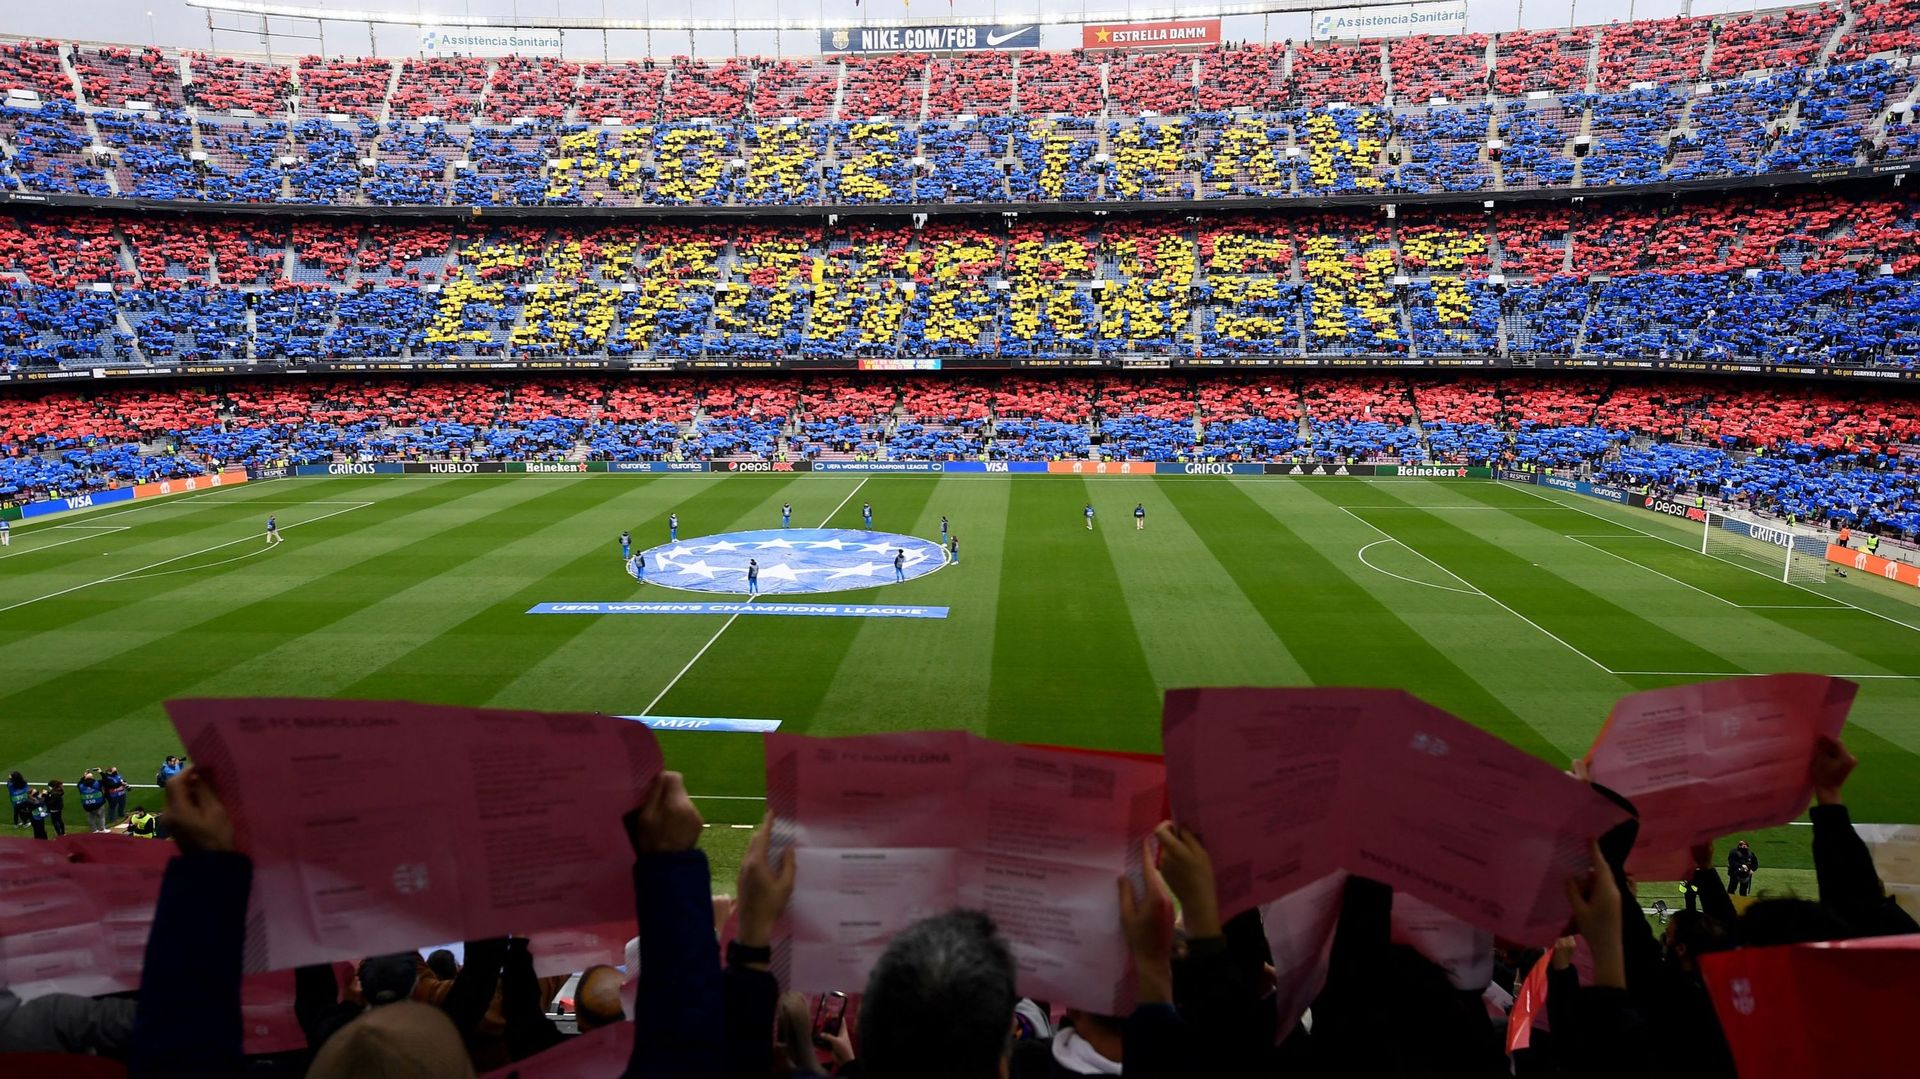 Football : Le Camp Nou, célèbre stade qui accueille les matches du FC Barcelone, va être rénové. Les travaux débuteront en juin prochain. L’équipe catalane va donc déménager à partir de 2023 et pour au moins une saison.